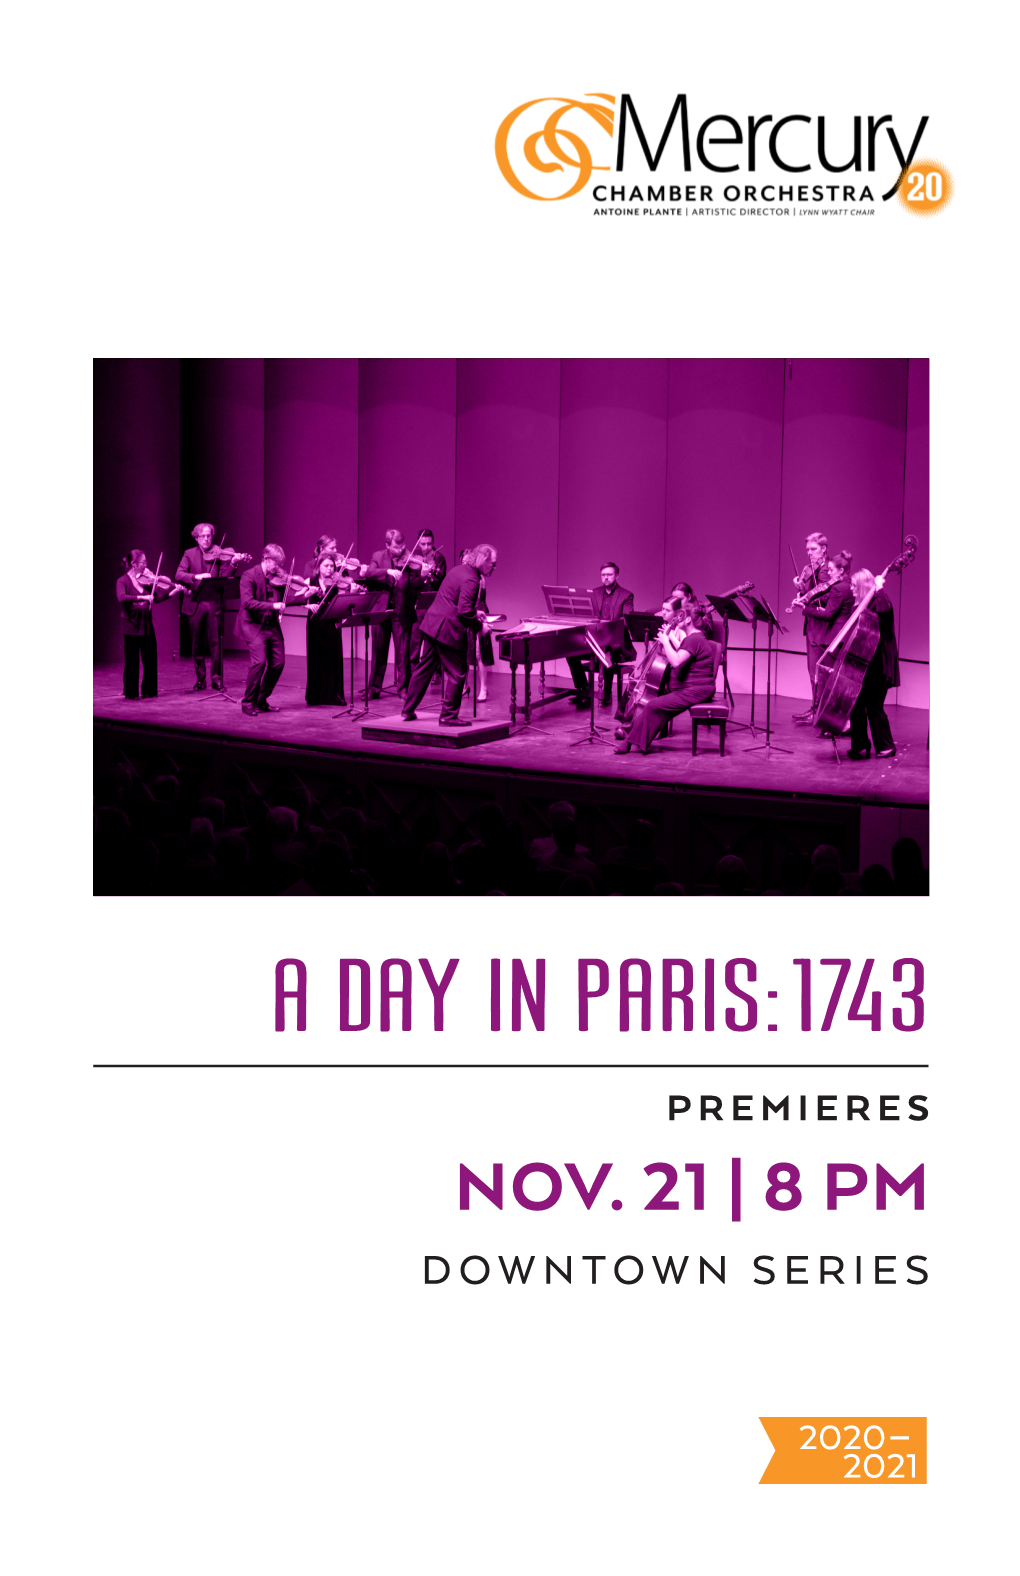 A Day in Paris: 1743 Premieres Nov